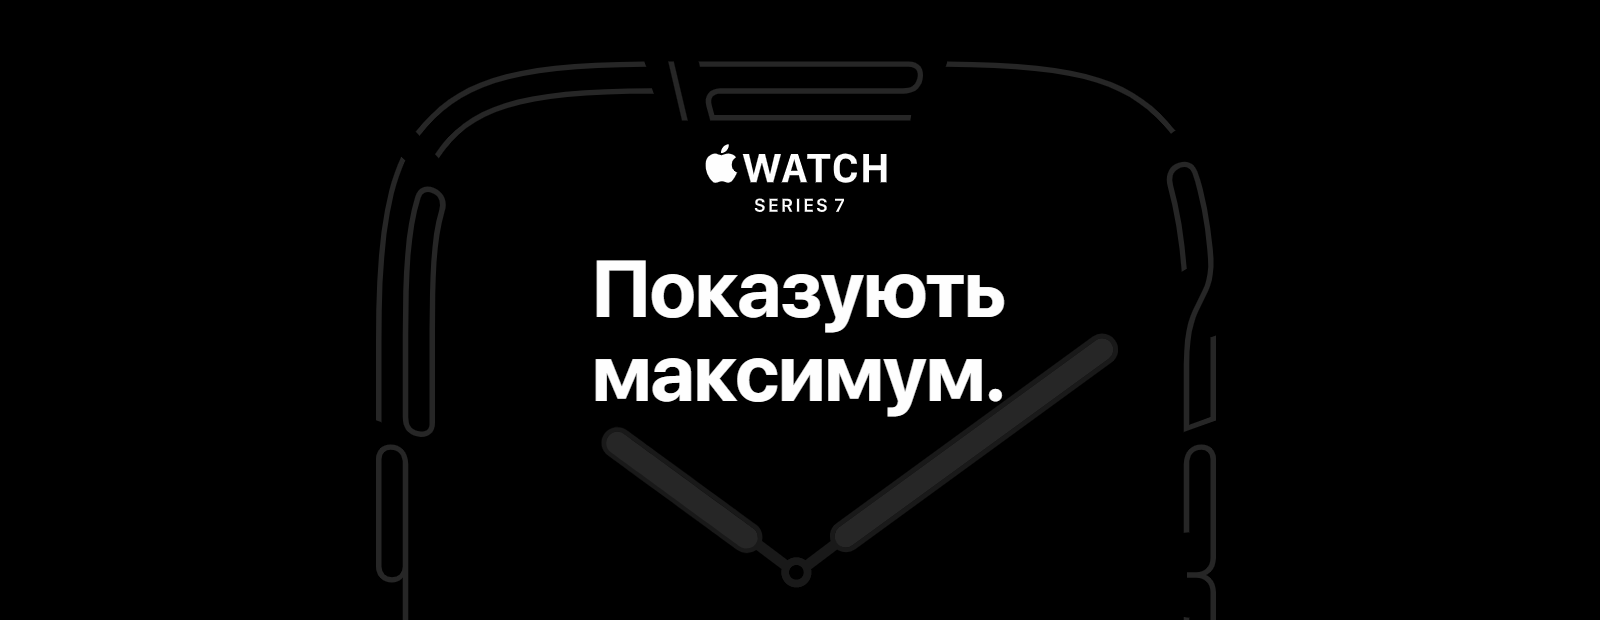 Фото 2 Apple Watch Series 7